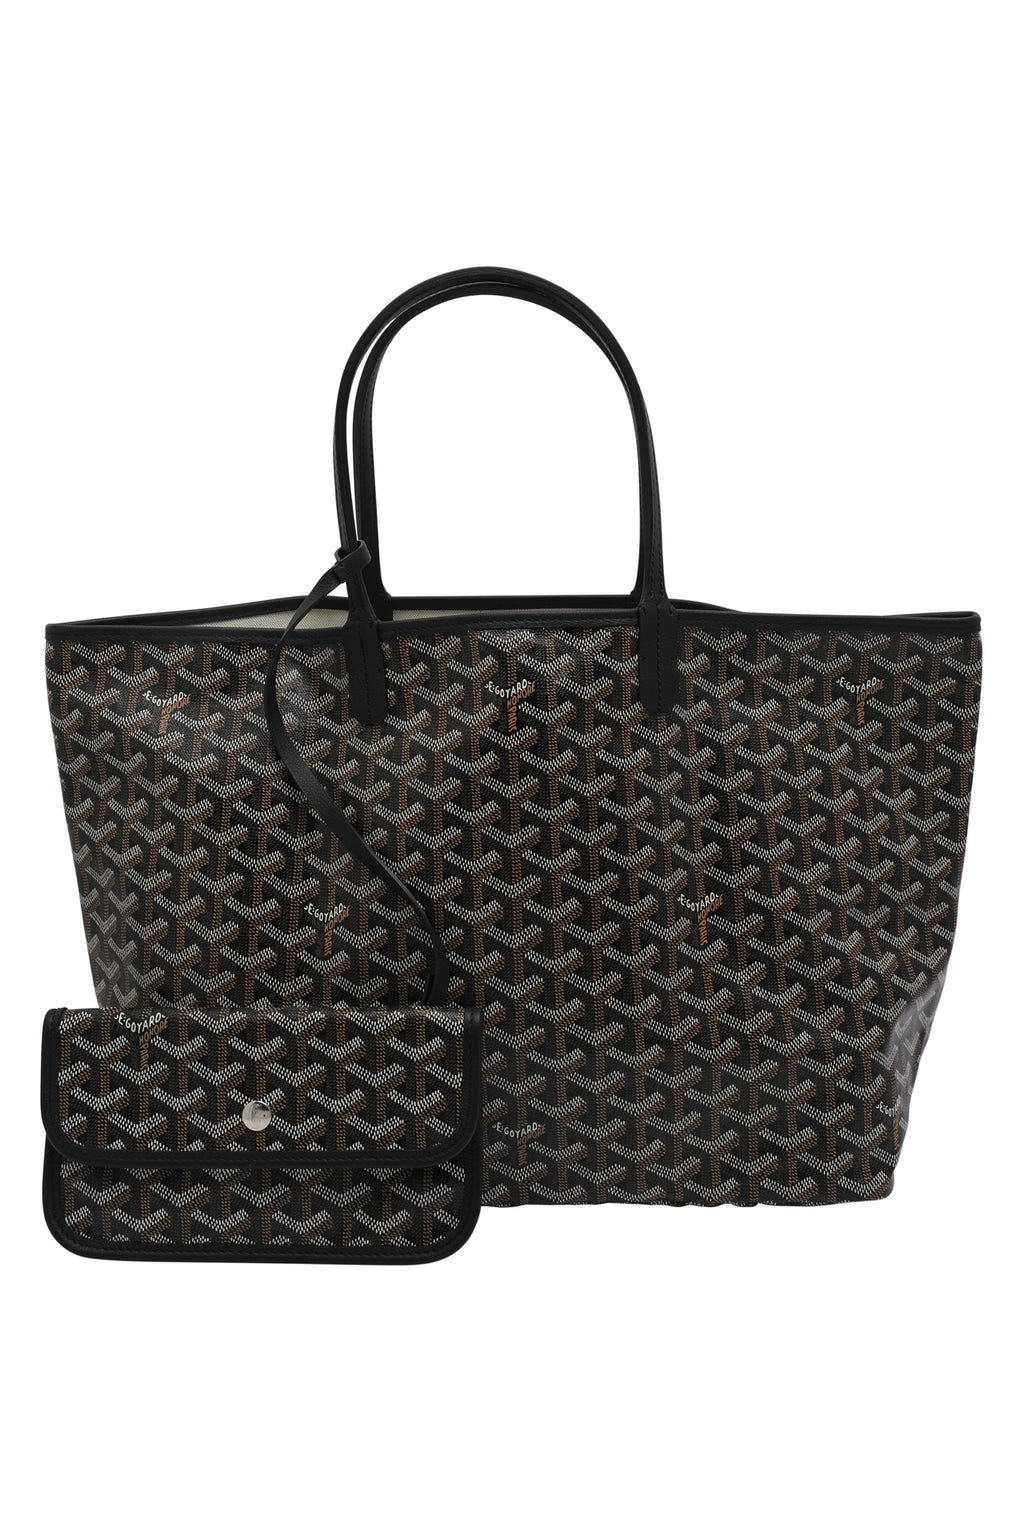 Goyard Saint Louis Tote PM Shopping bag black tan